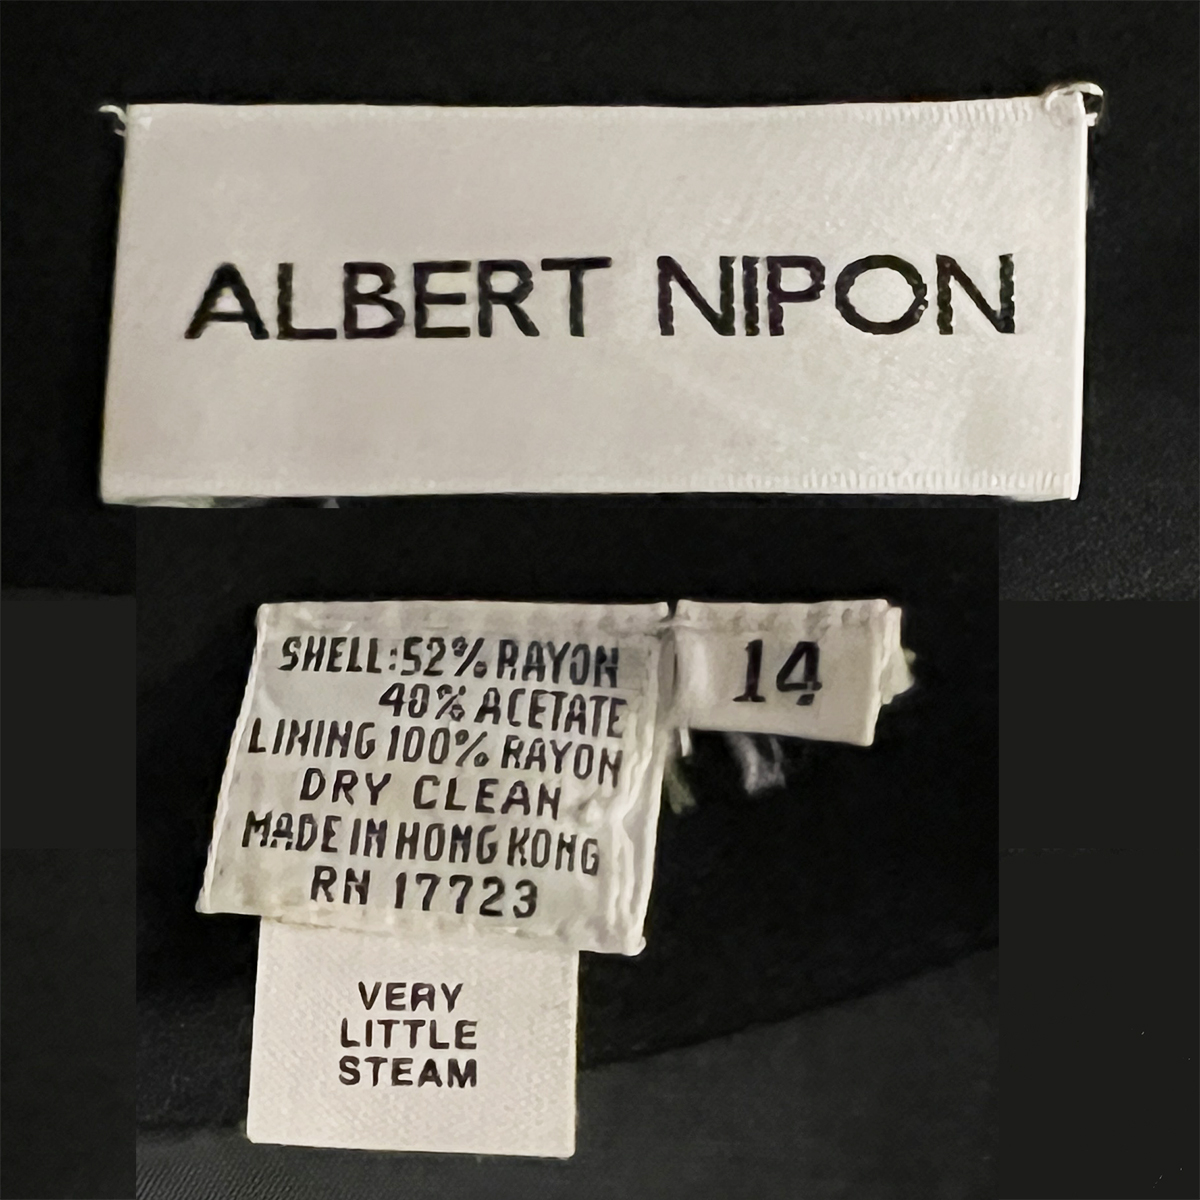 Albert Nippon label